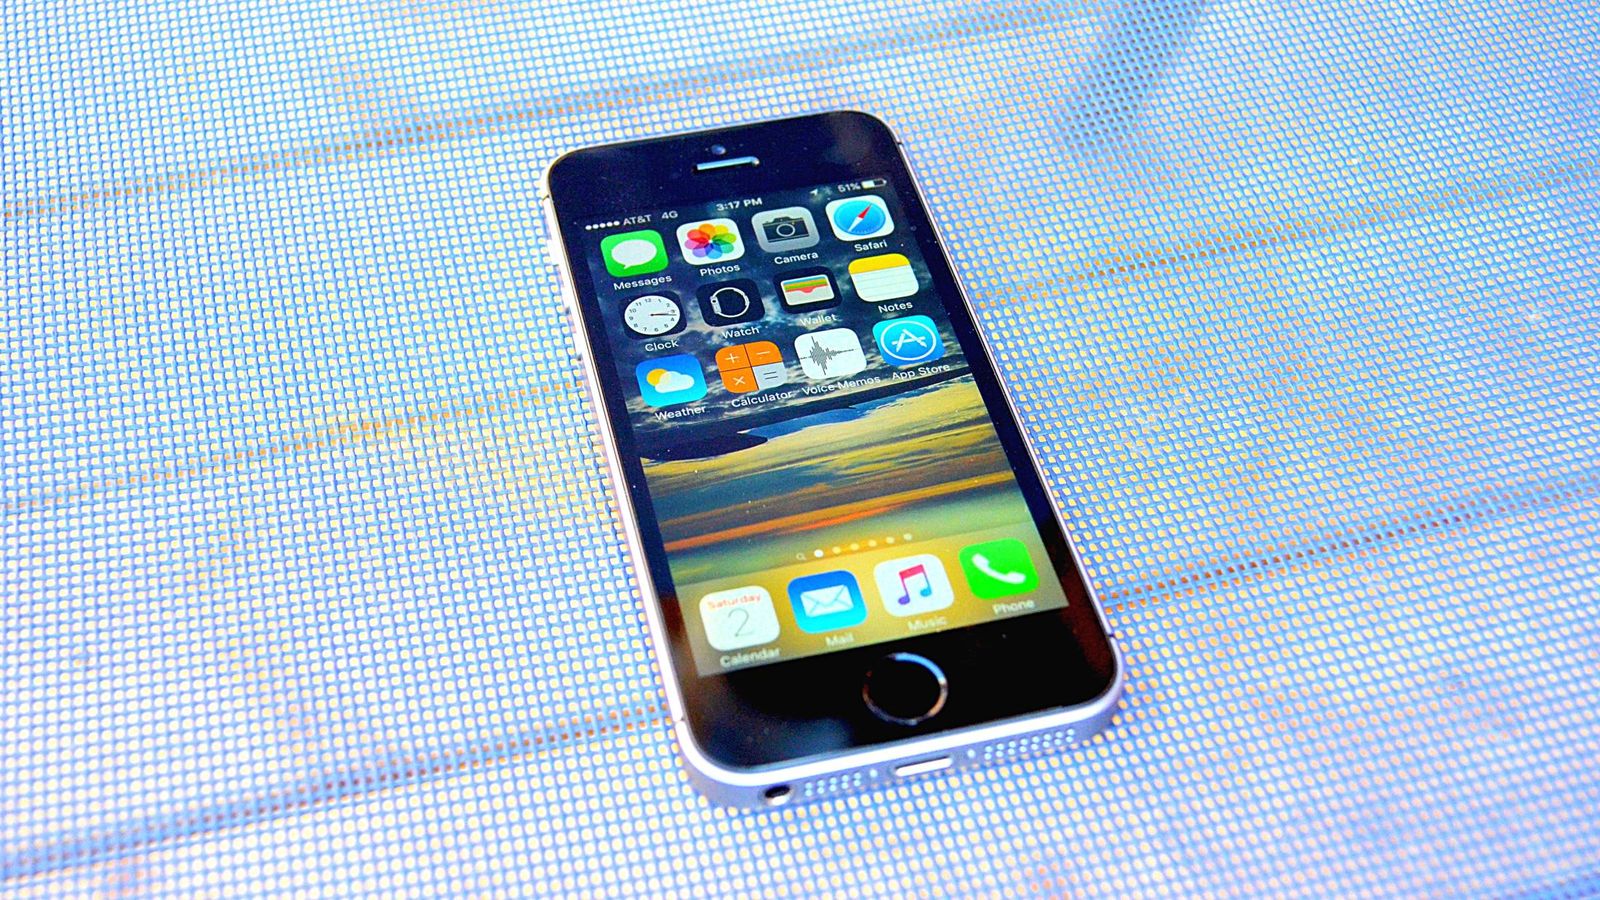 El iPhone 6S podría llegar en color rosa